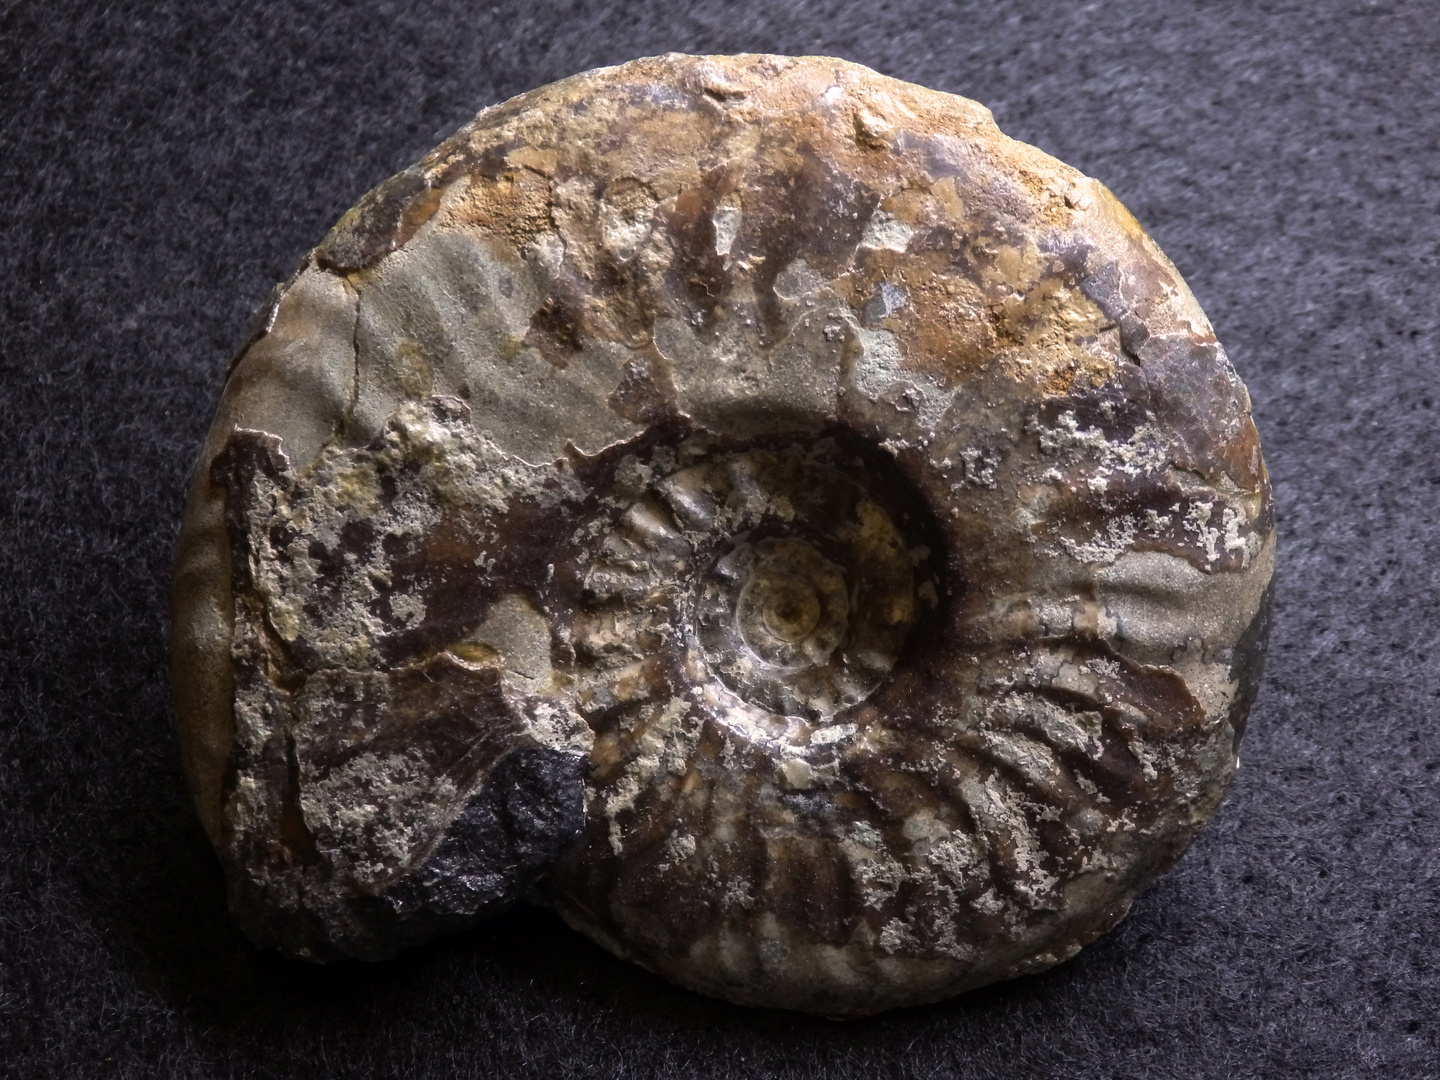 Ammonit aus der Jurazeit - Leioceras comptum